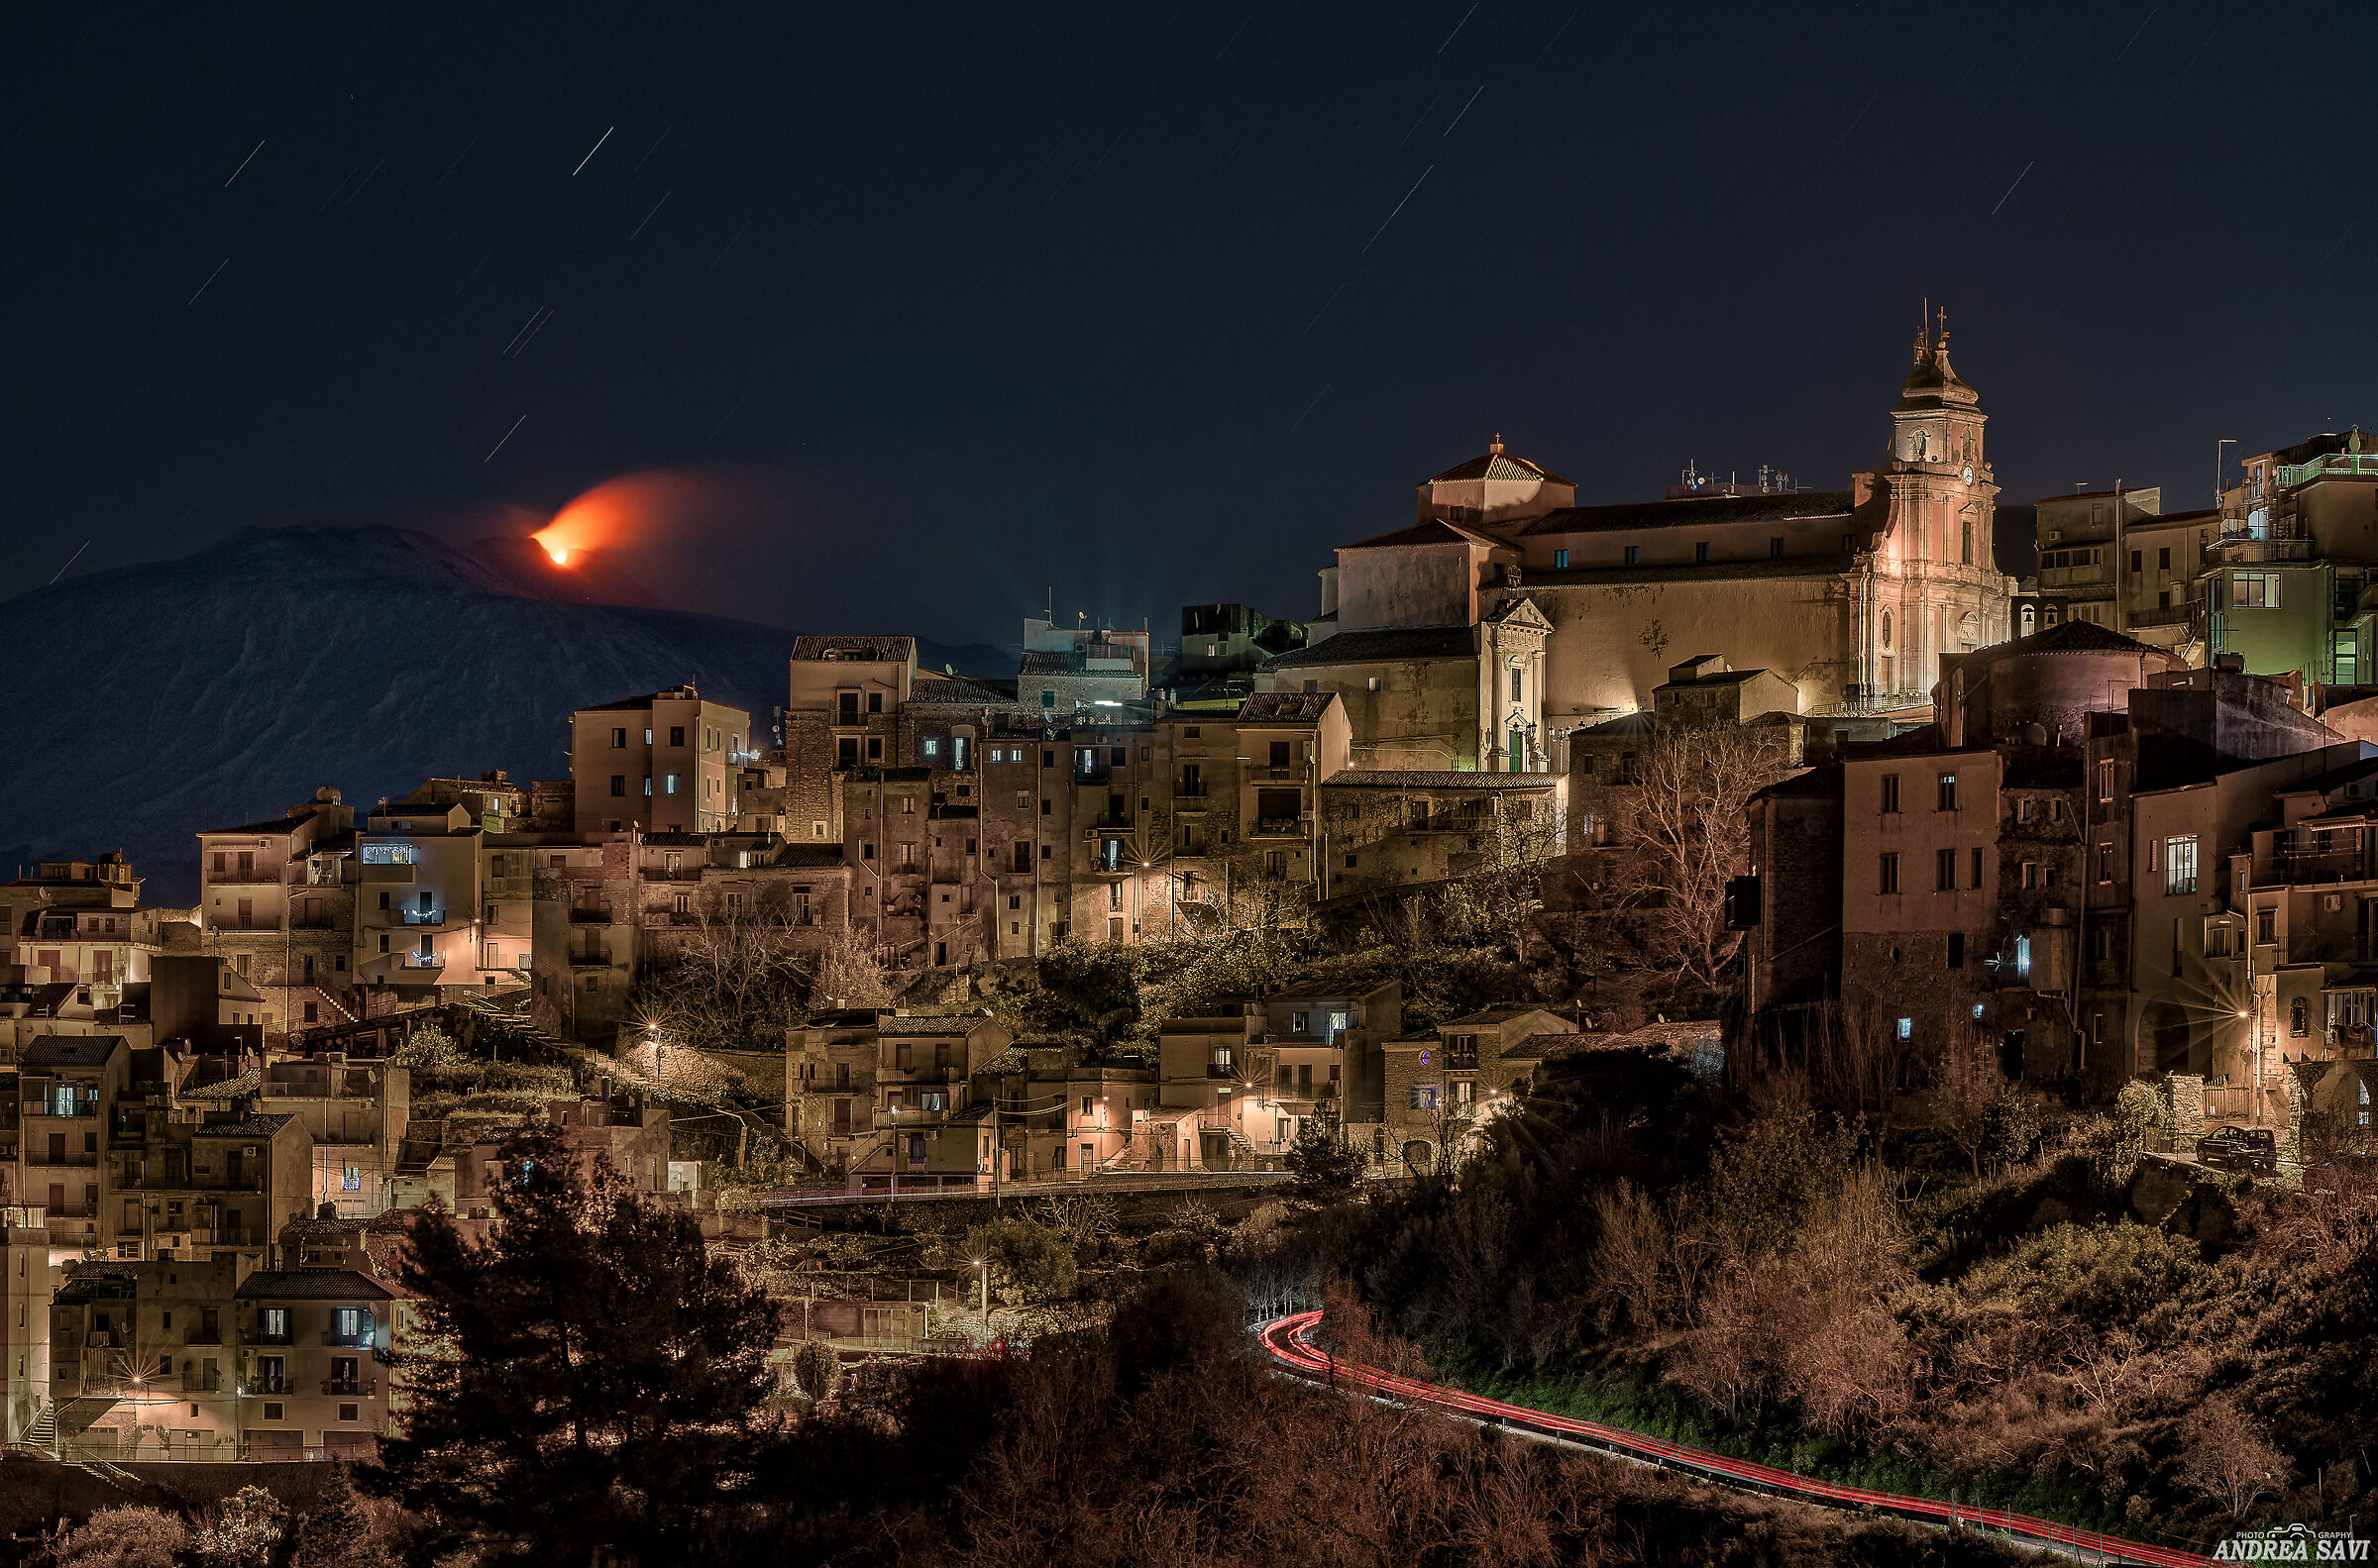 Centuripe (en) - Notturna con Etna in eruzione...